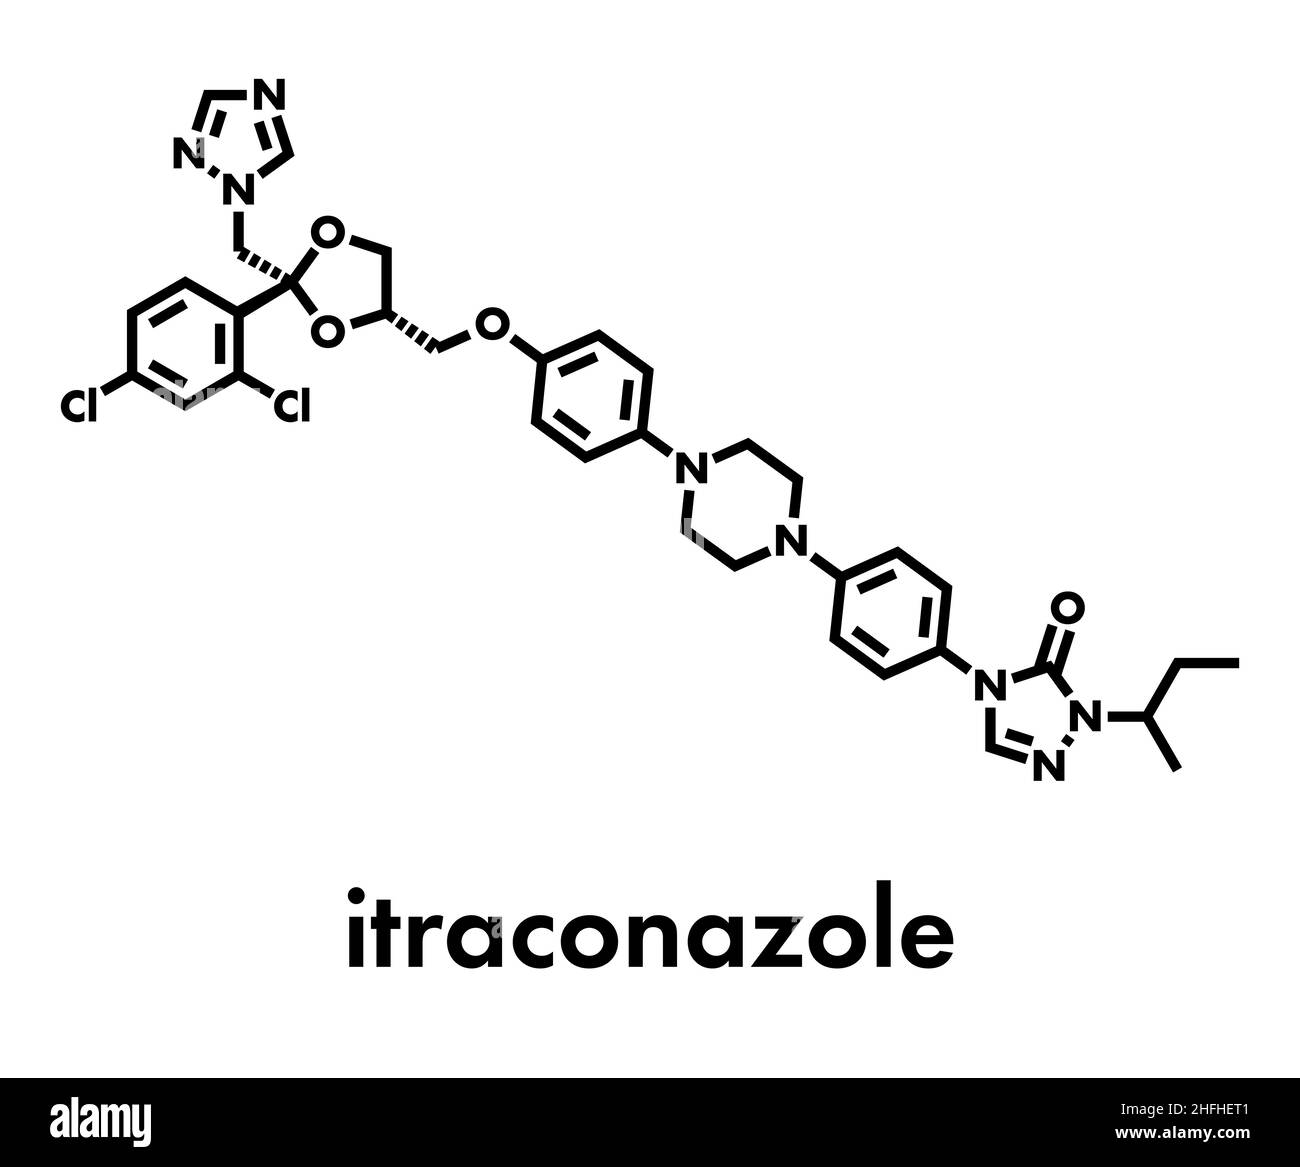 L'itraconazole (classe de médicaments antifongiques triazolés) molécule. Formule topologique. Illustration de Vecteur